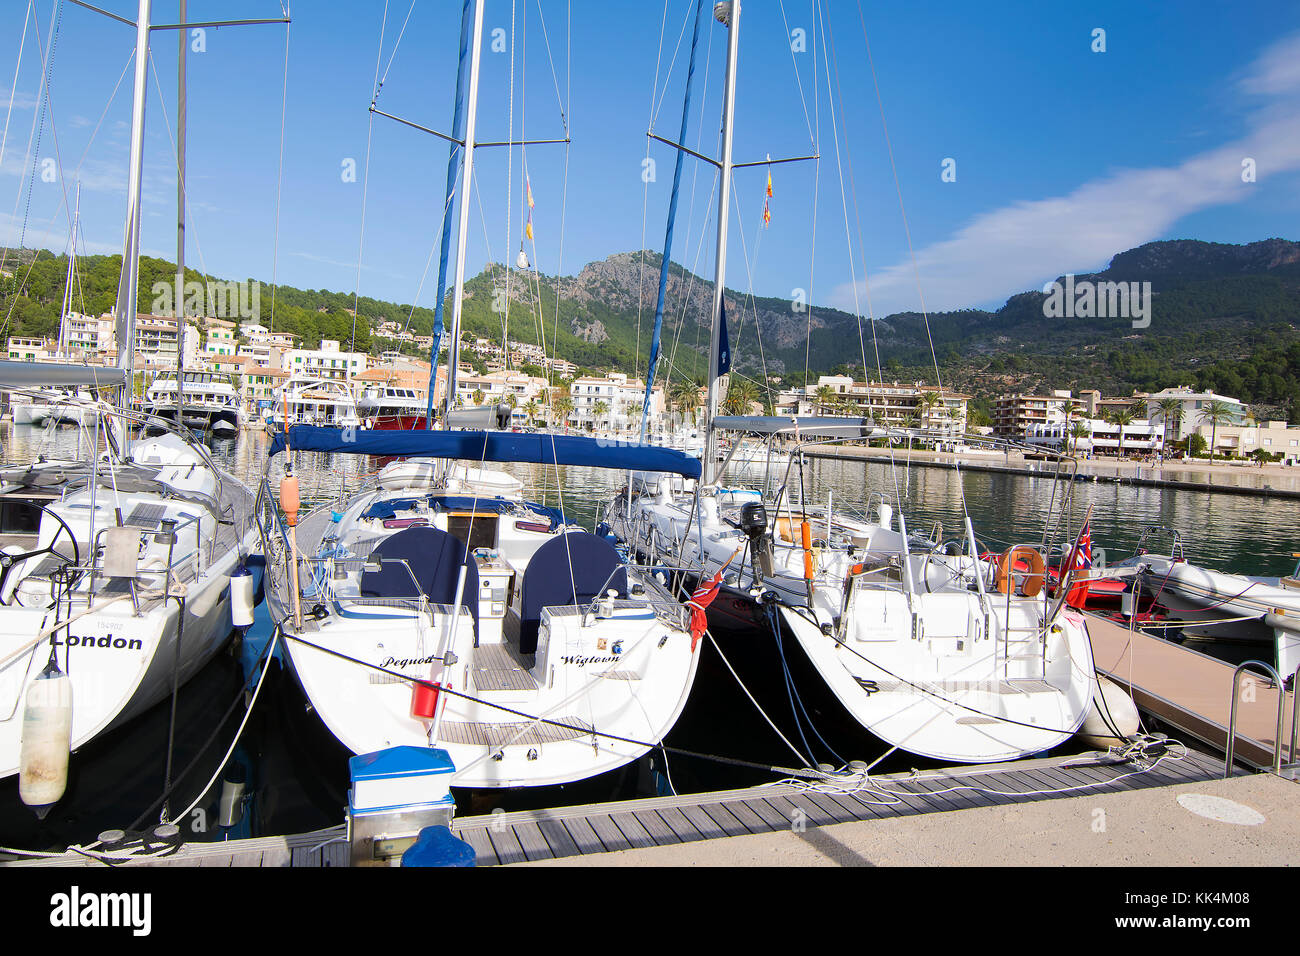 Le port de plaisance, port de soller, Majorque, Espagne Banque D'Images